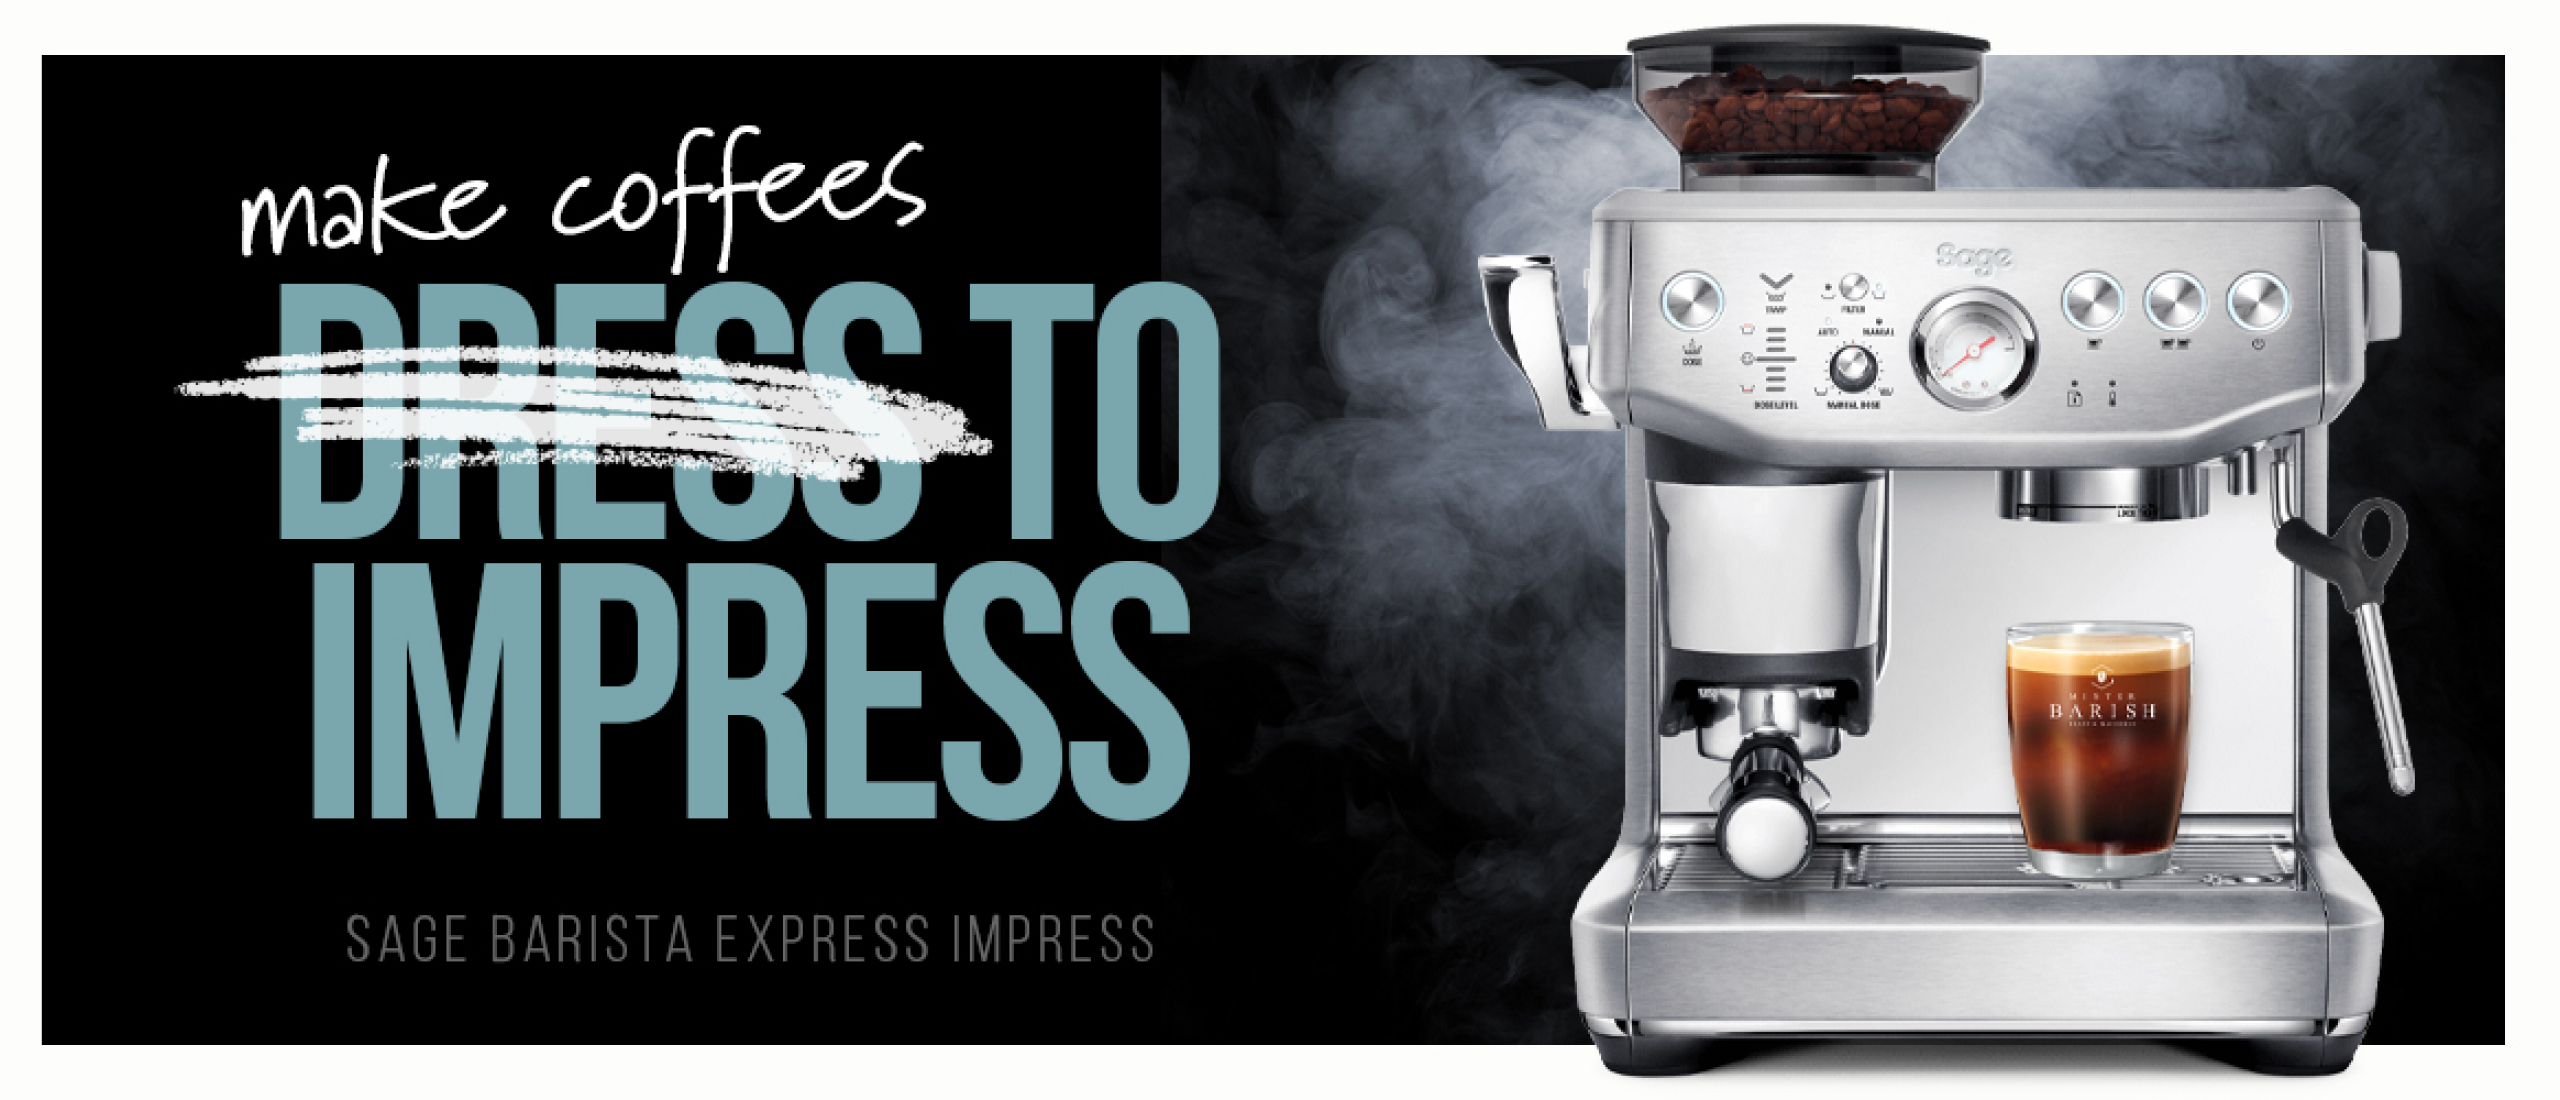 Sage Barista Express Impress: de meest gebruiksvriendelijke espressomachine van Sage